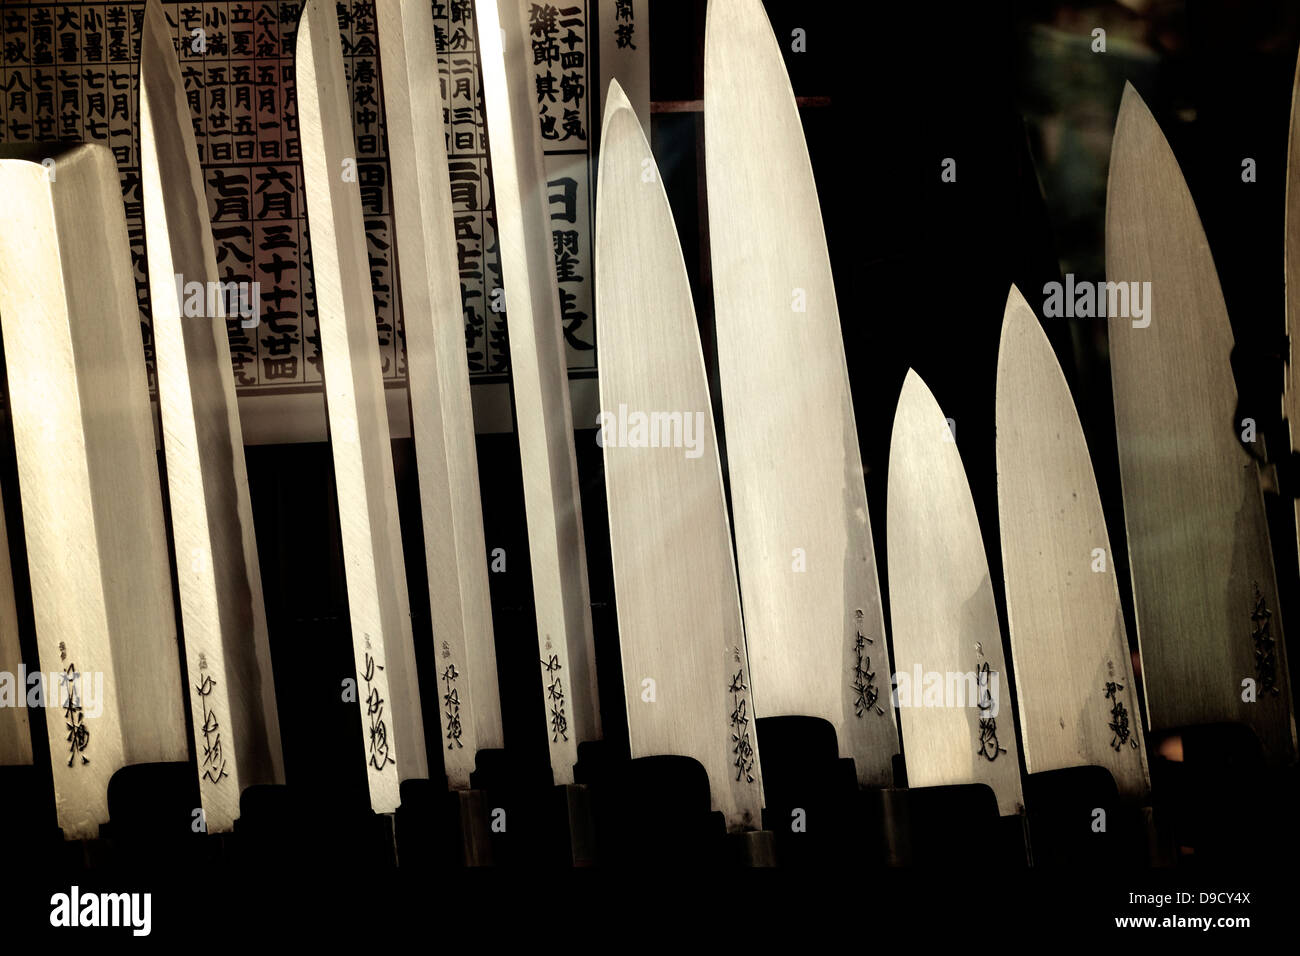 Japanese Kitchen Knives on Display at Knife Specialty Shop at Asakusa, Japan Stock Photo